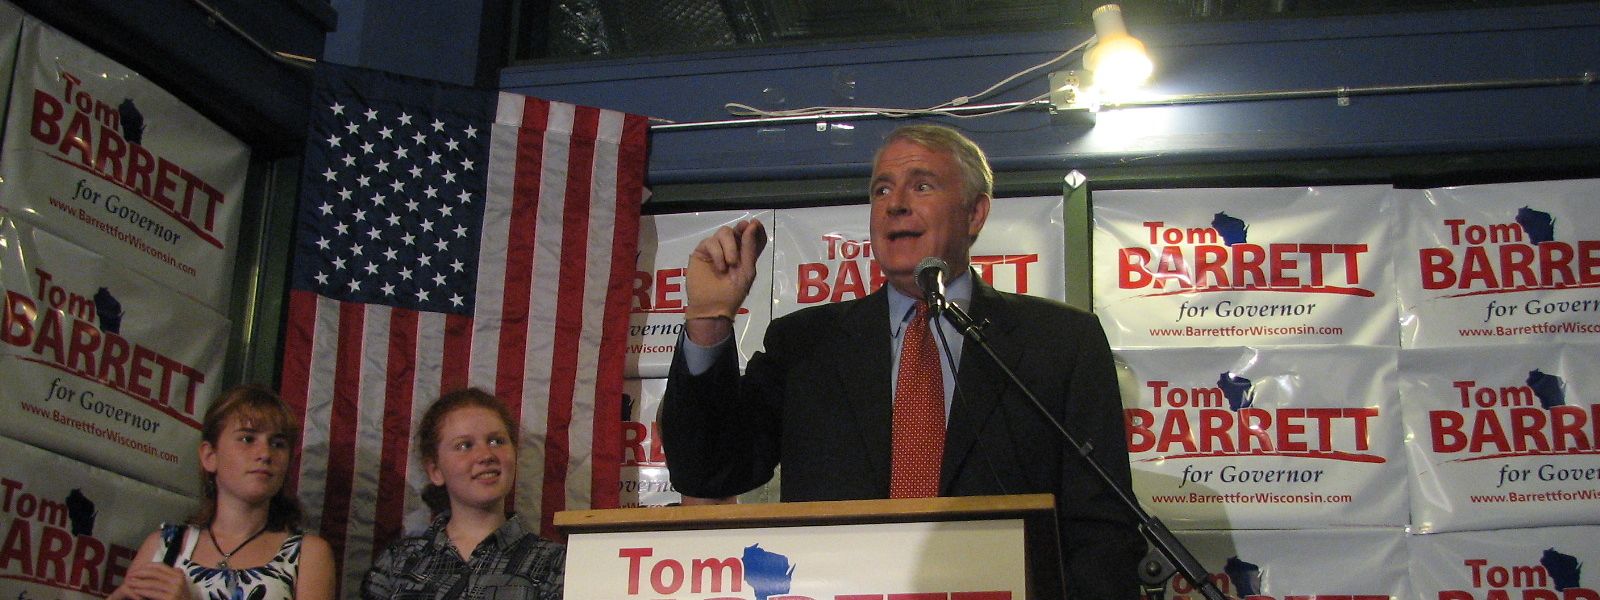 Tom Barrett auf einer Wahlkampfveranstaltung für seine Kandidatur zum Gouverneur von Wisconsin im Jahr 2010.